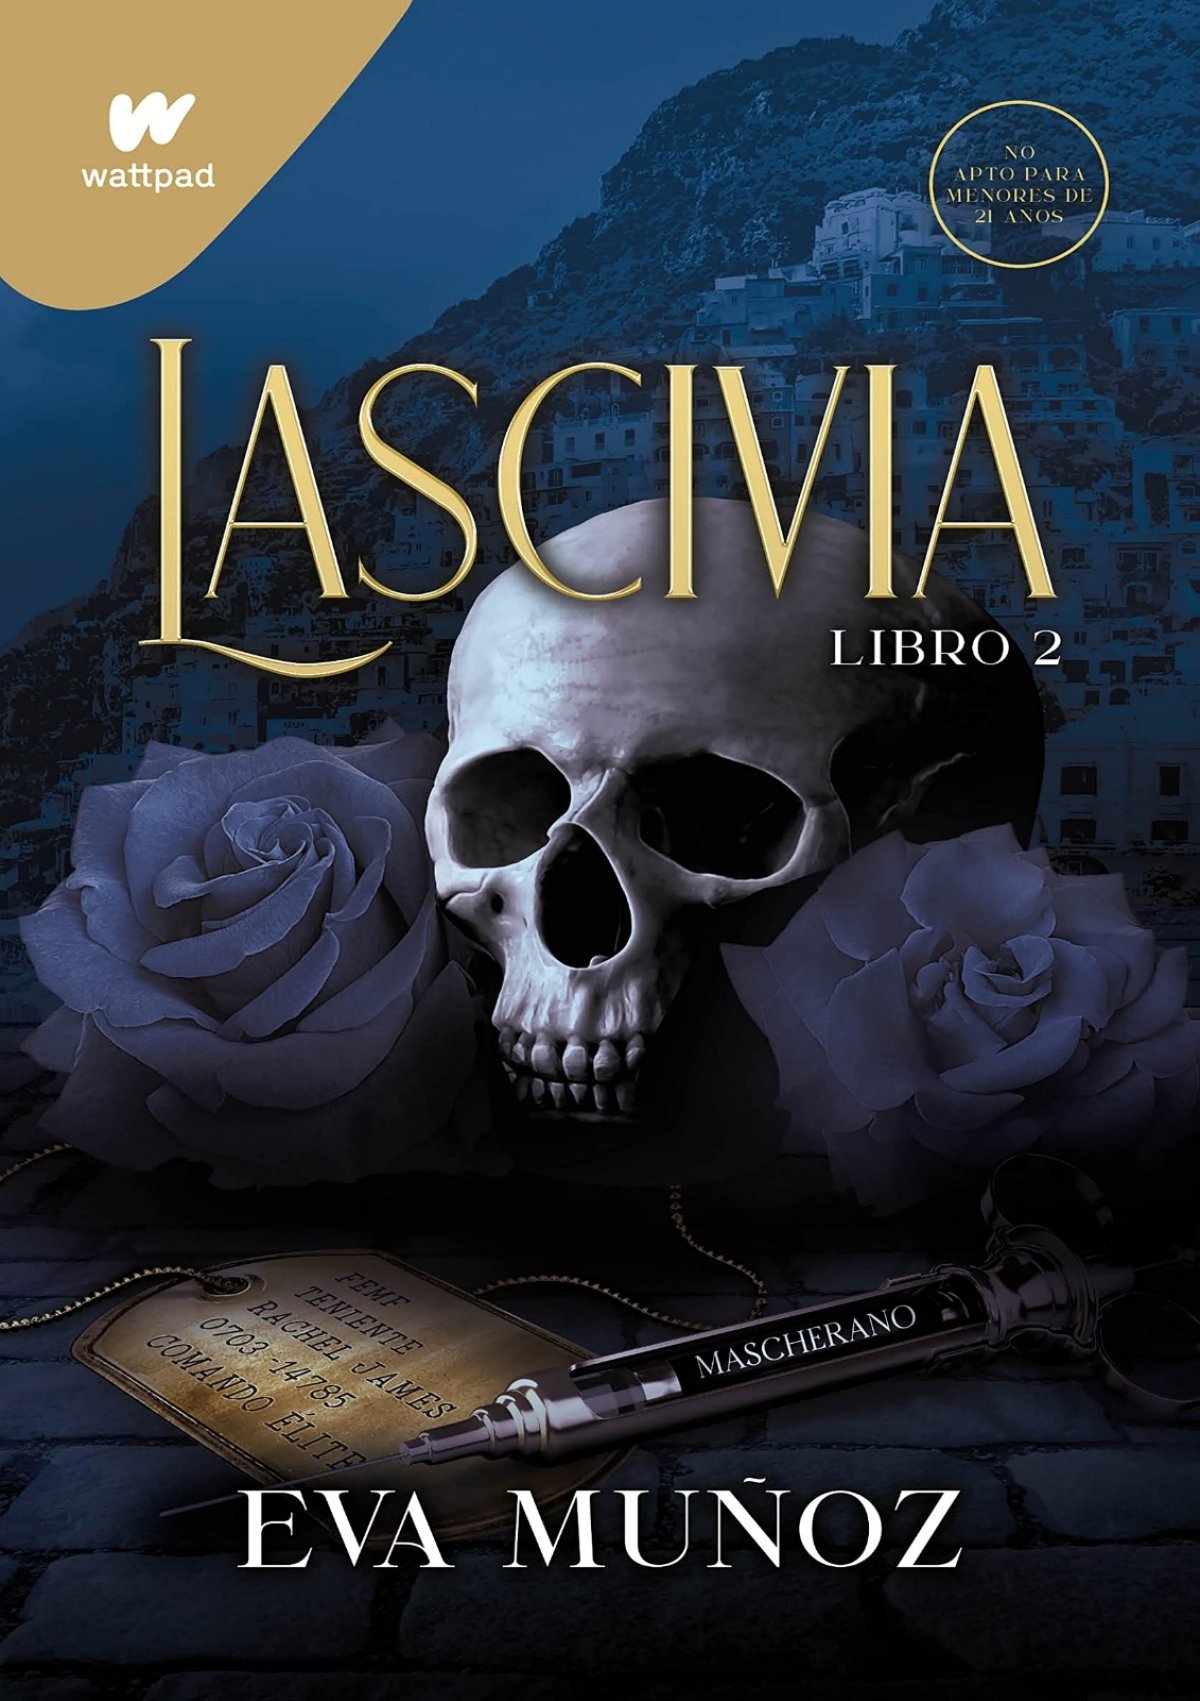 Read ebook [PDF] Lascivia. Libro 2 (Pecados placenteros 1) (Spanish